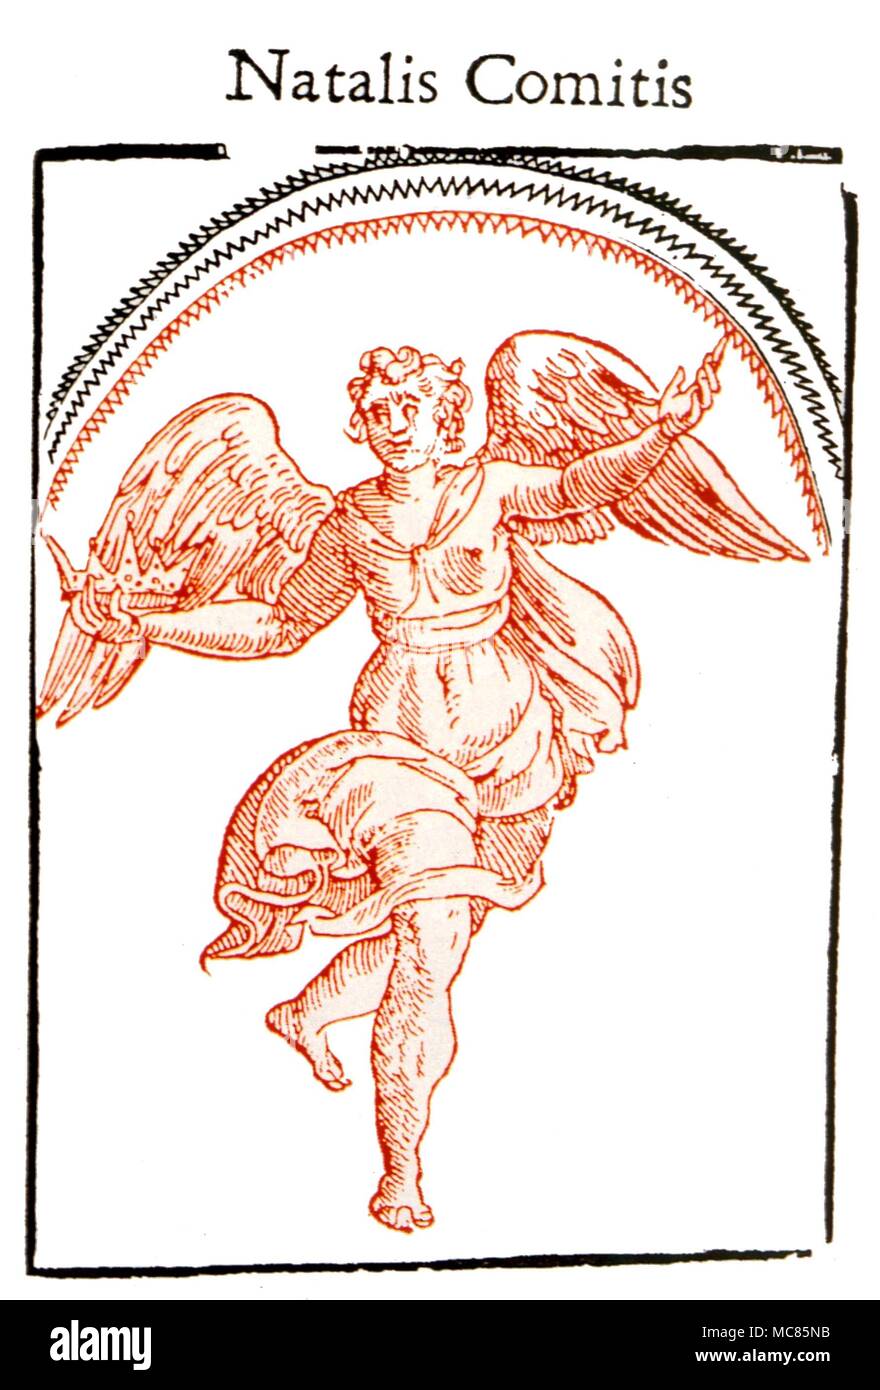 GREEK MYTHOLOGY Iris, goddess of the rainbow. After an illustration in Natalis Comitis 'Mythologiae' sive explicationis Fabularum', Book Ten, 1616 Stock Photo